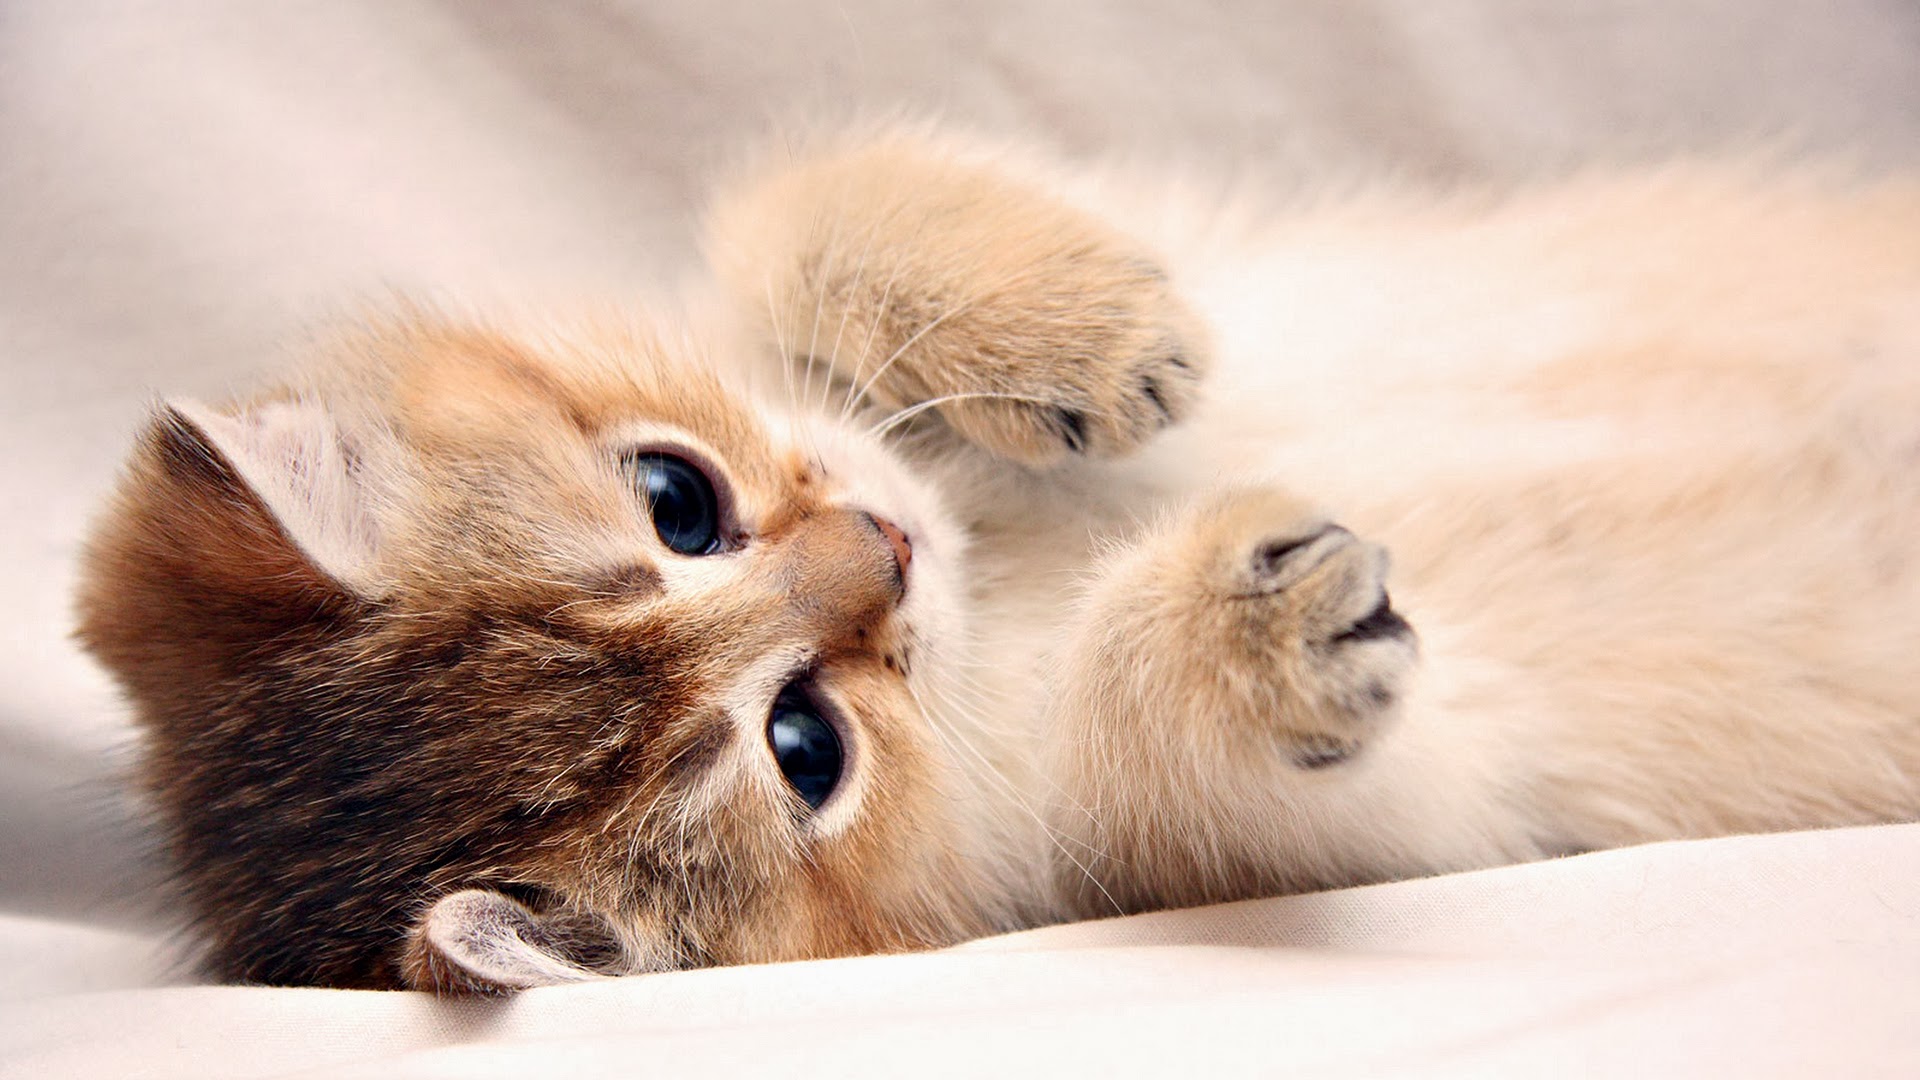 Cute Kitten Cat Photo Image 2k HD Wallpaper